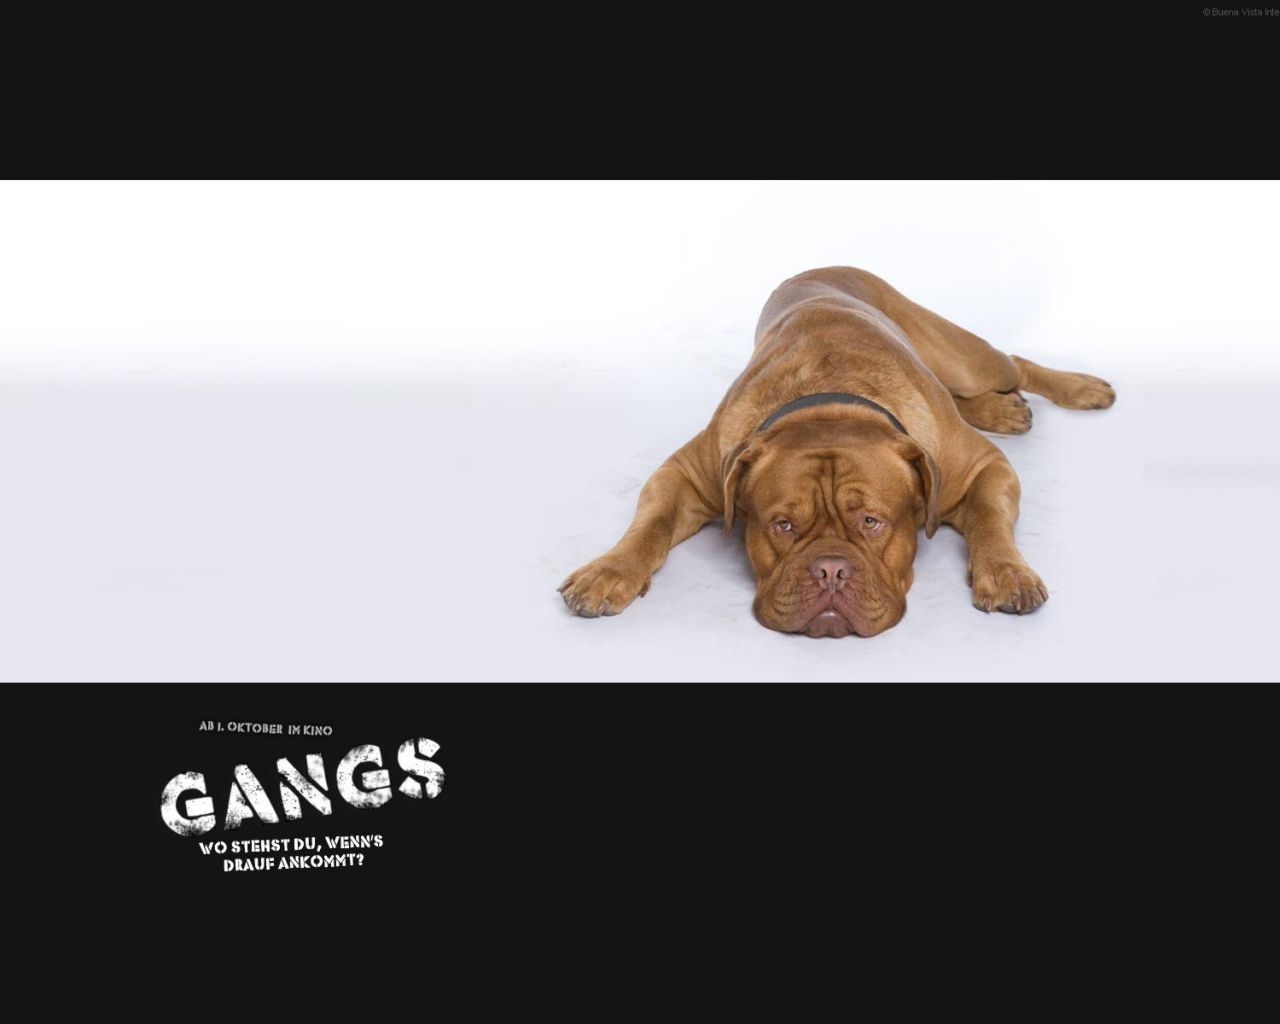 Фильм Банда | Gangs - лучшие обои для рабочего стола